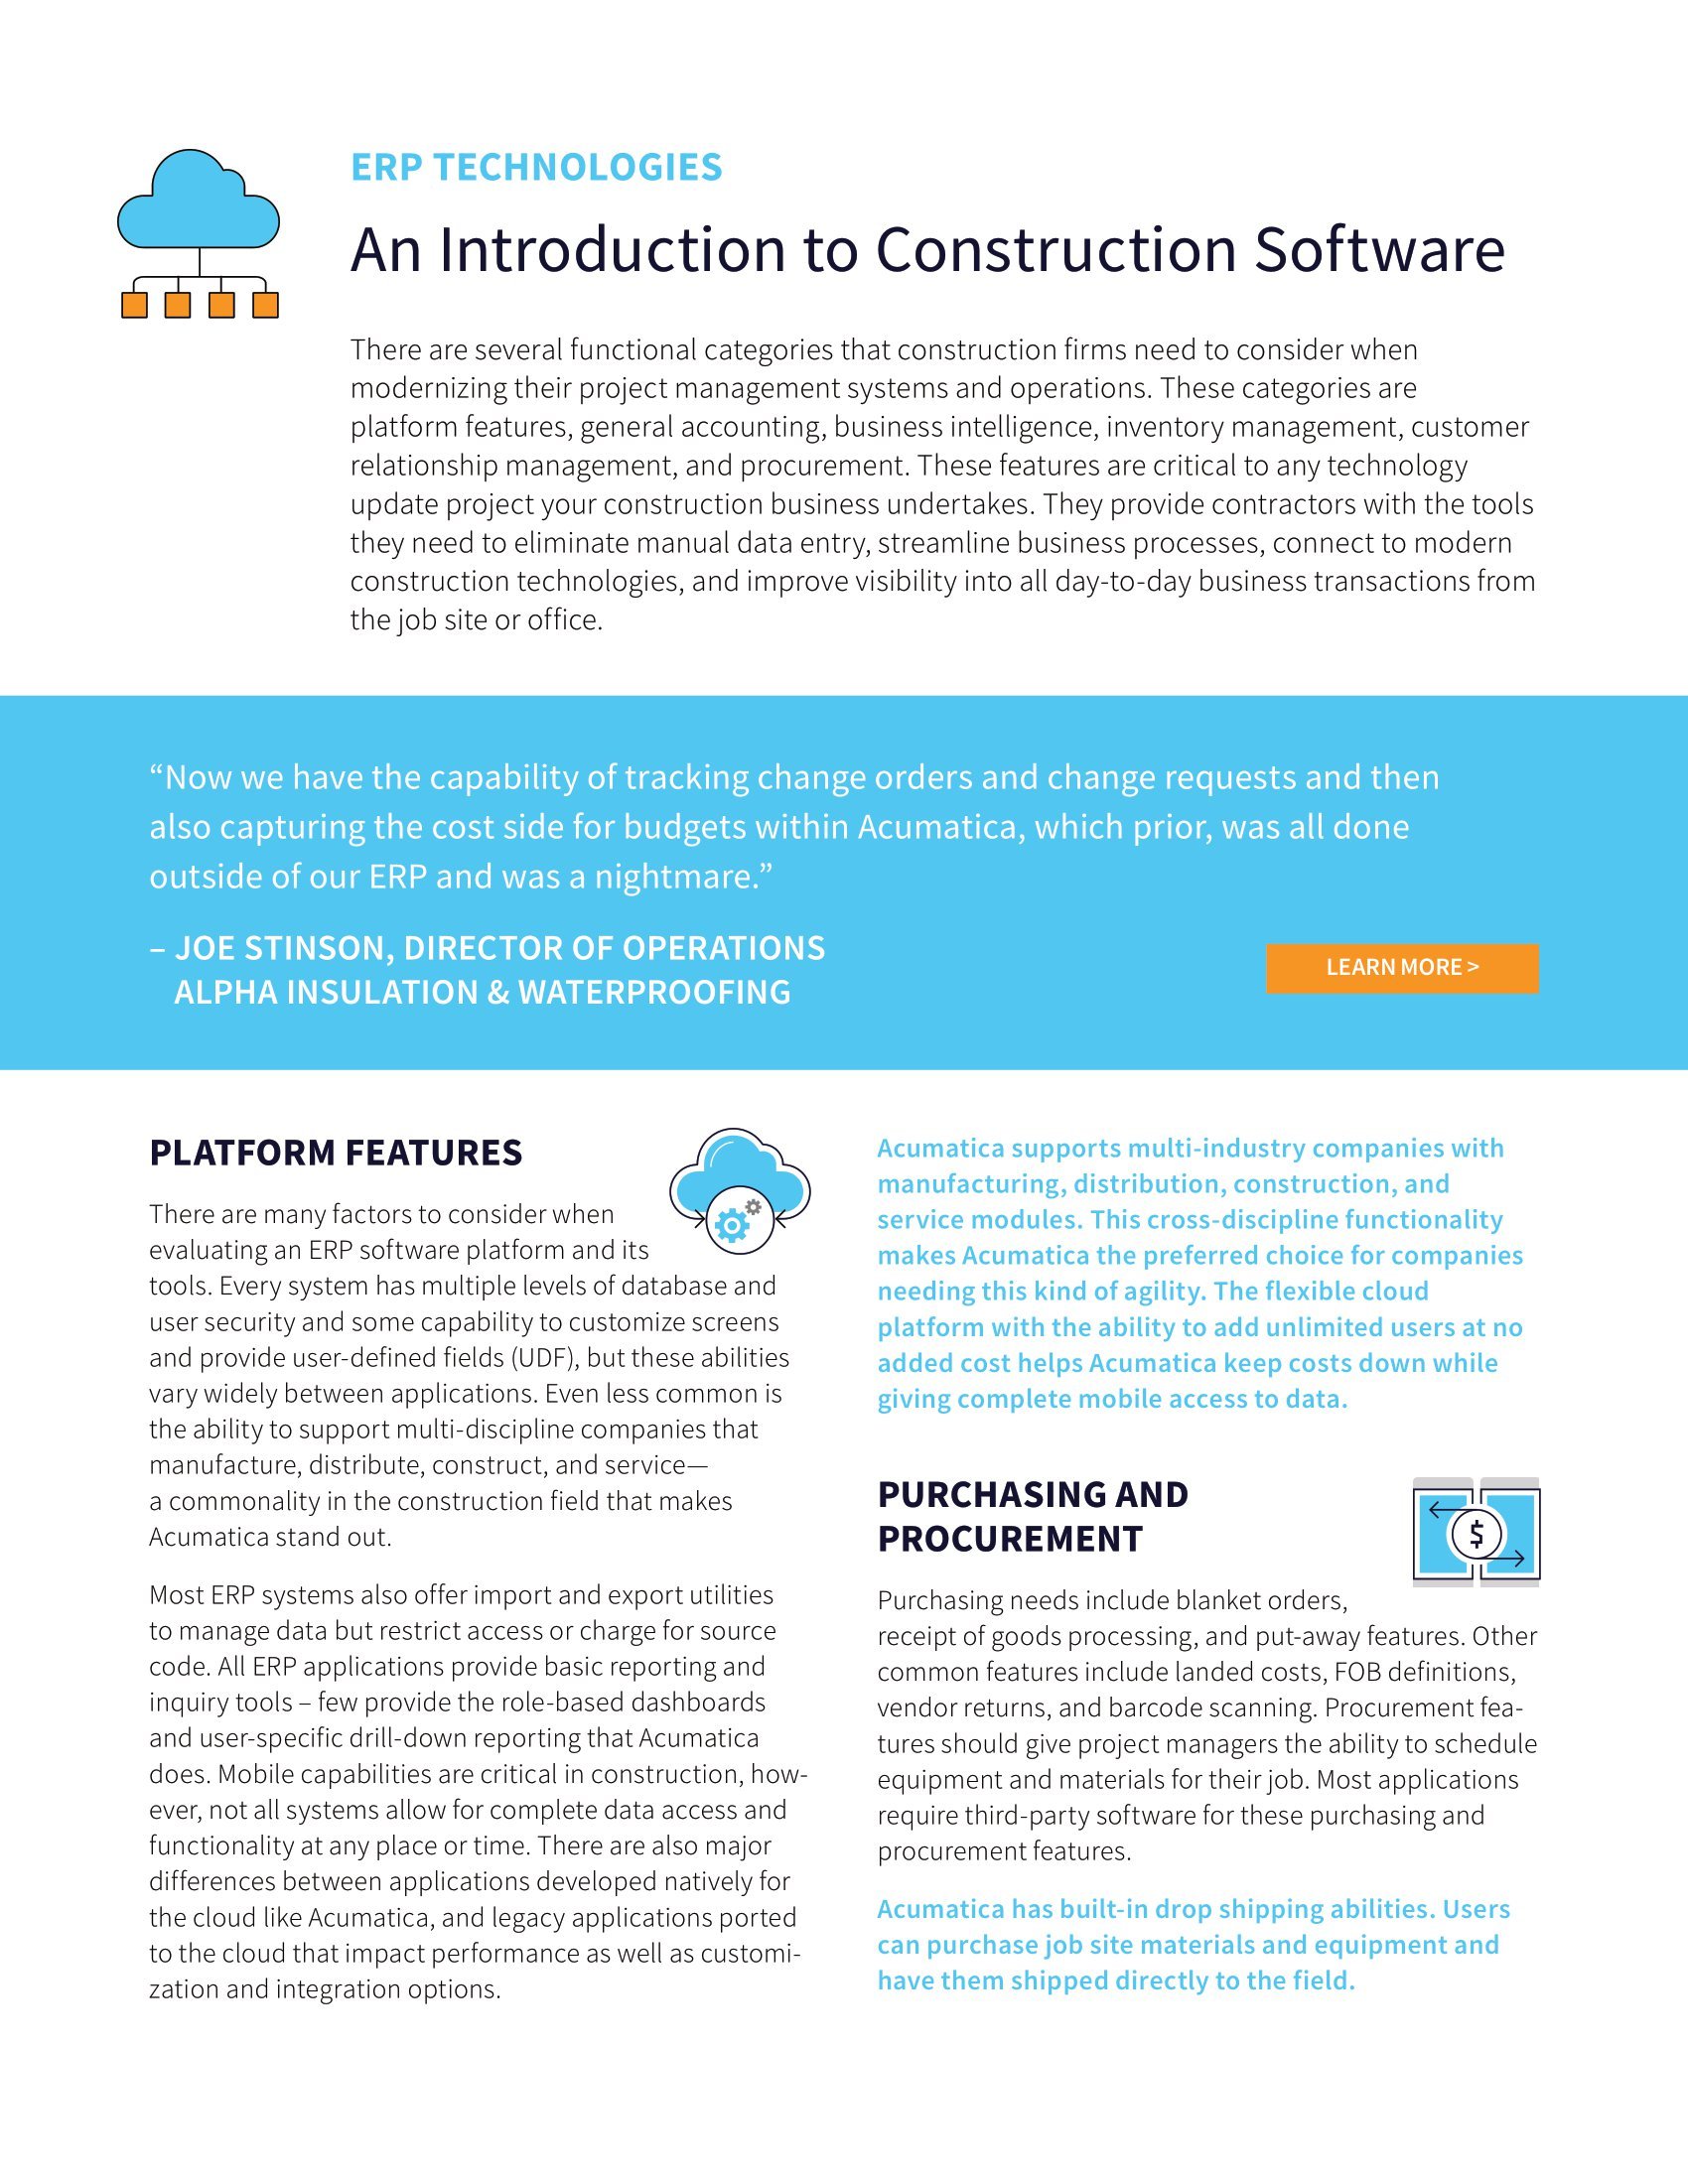 Prepárese para la evolución del sector de la construcción con una transformación digital, página 1